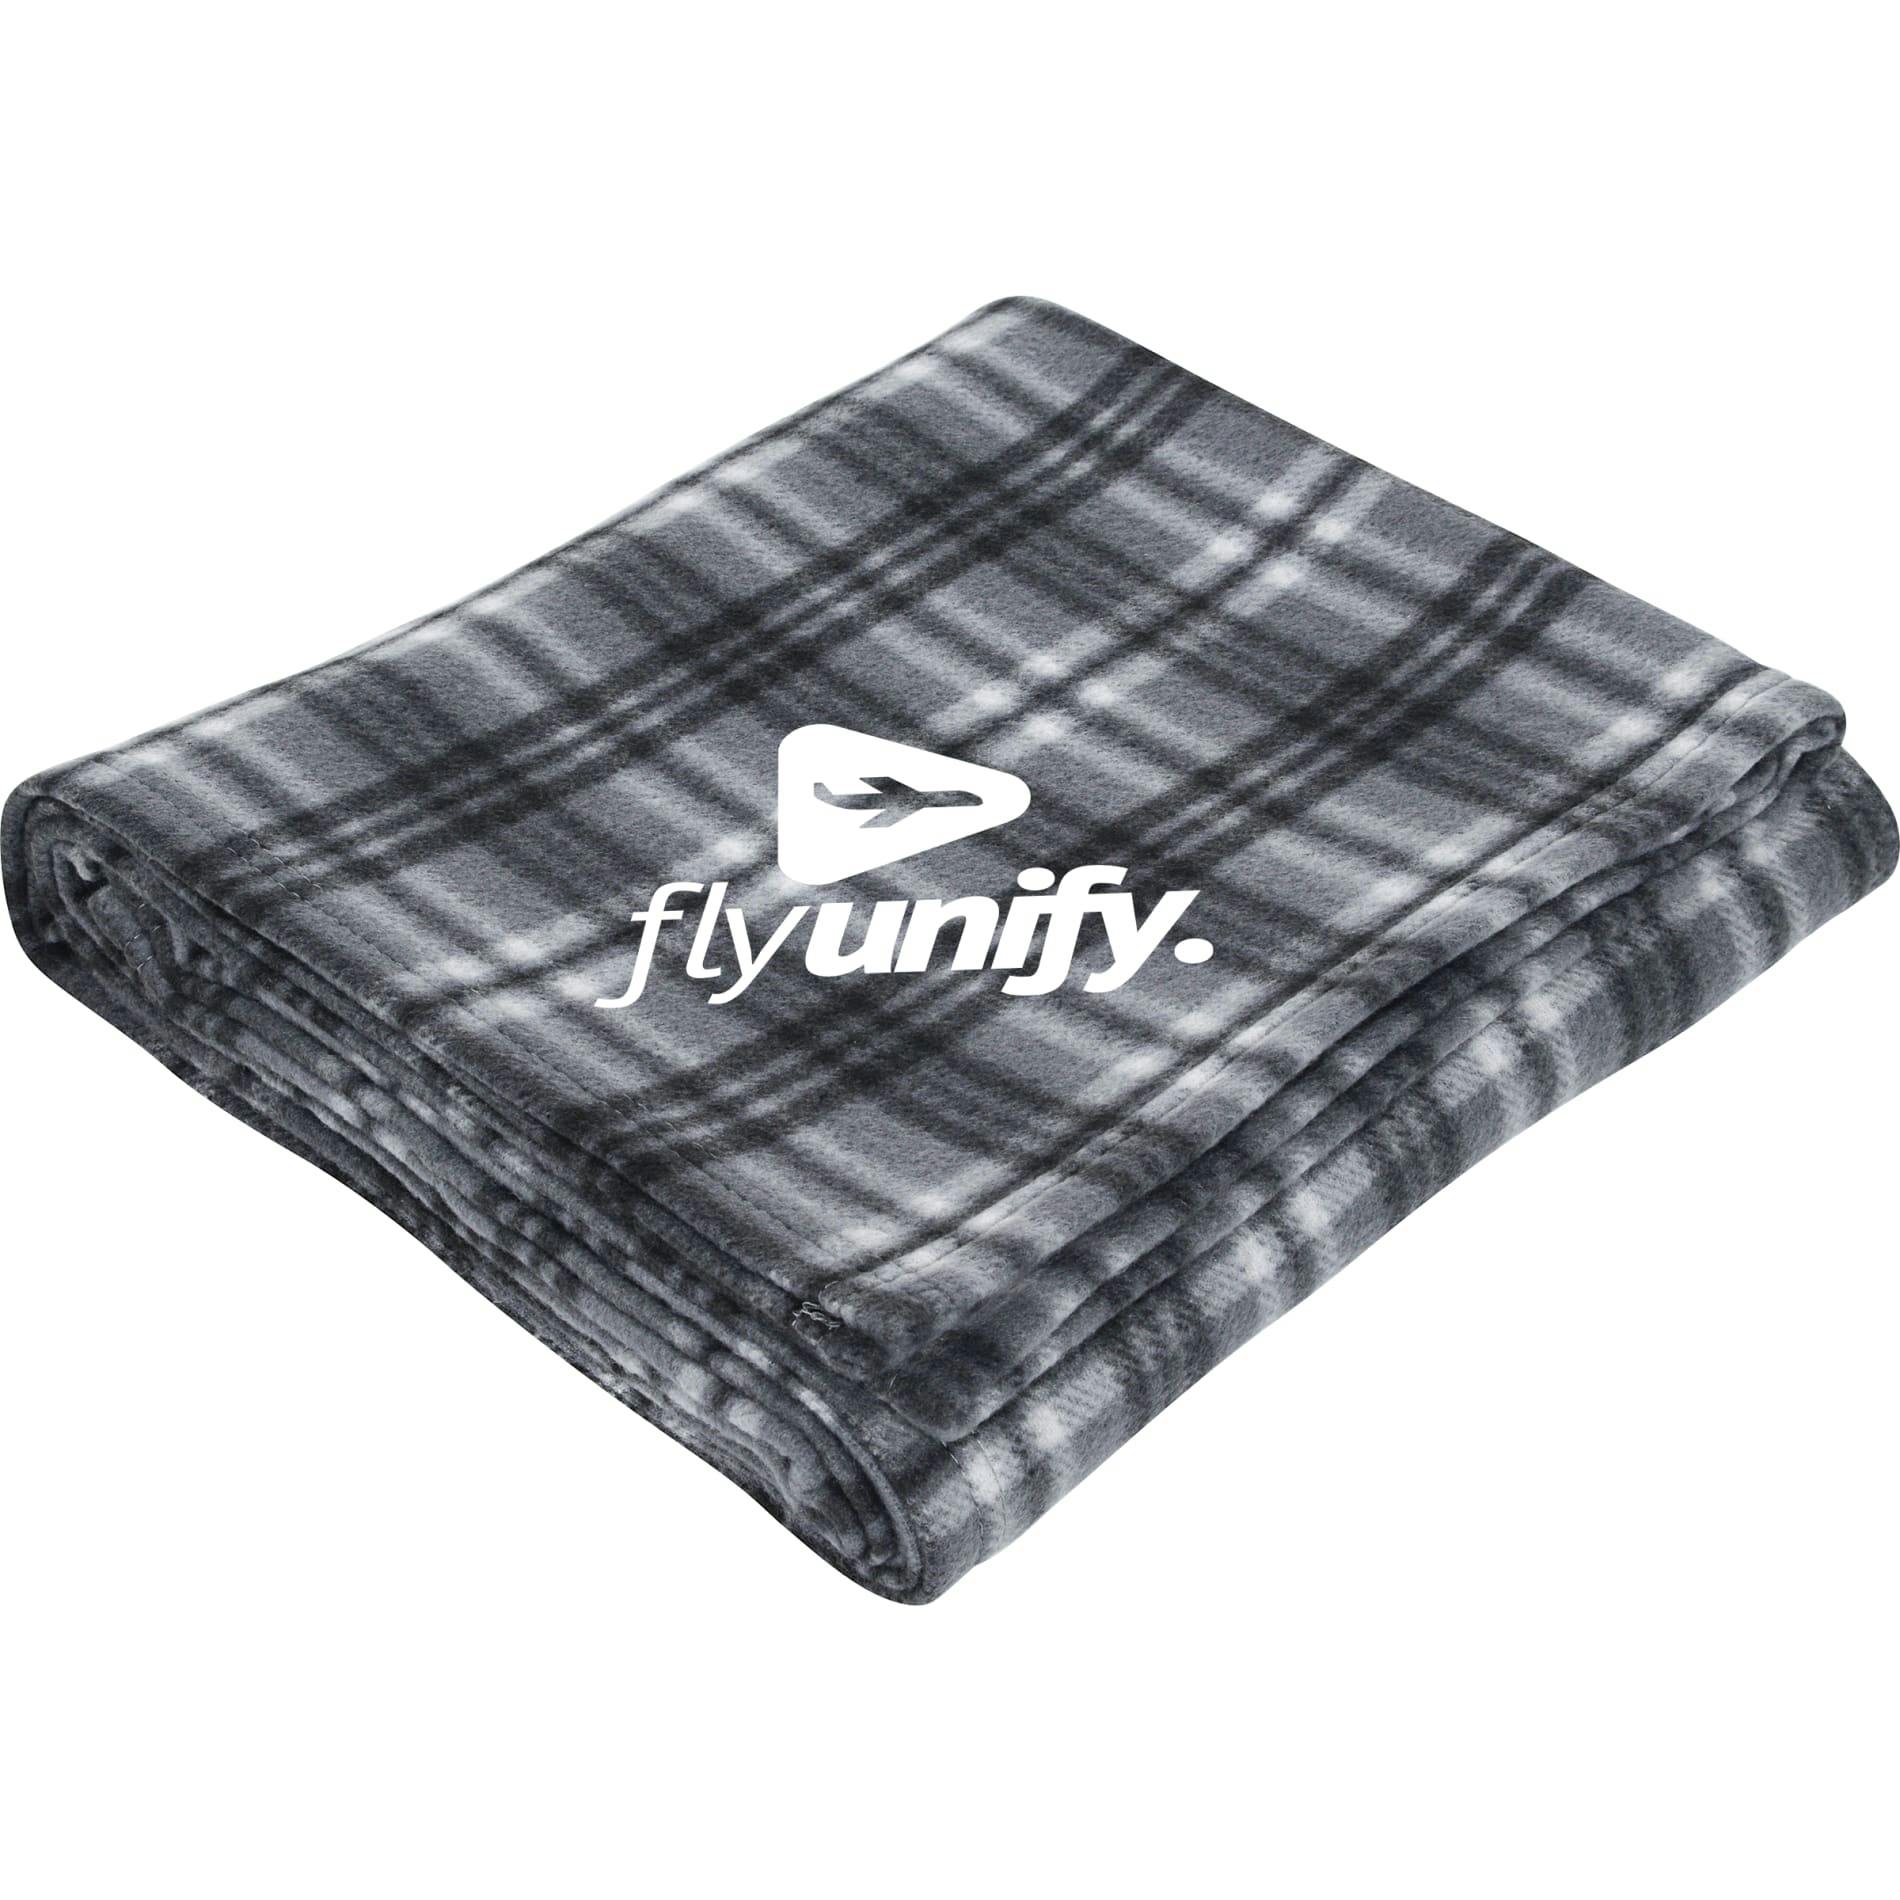 Plaid Fleece Blanket - additional Image 1